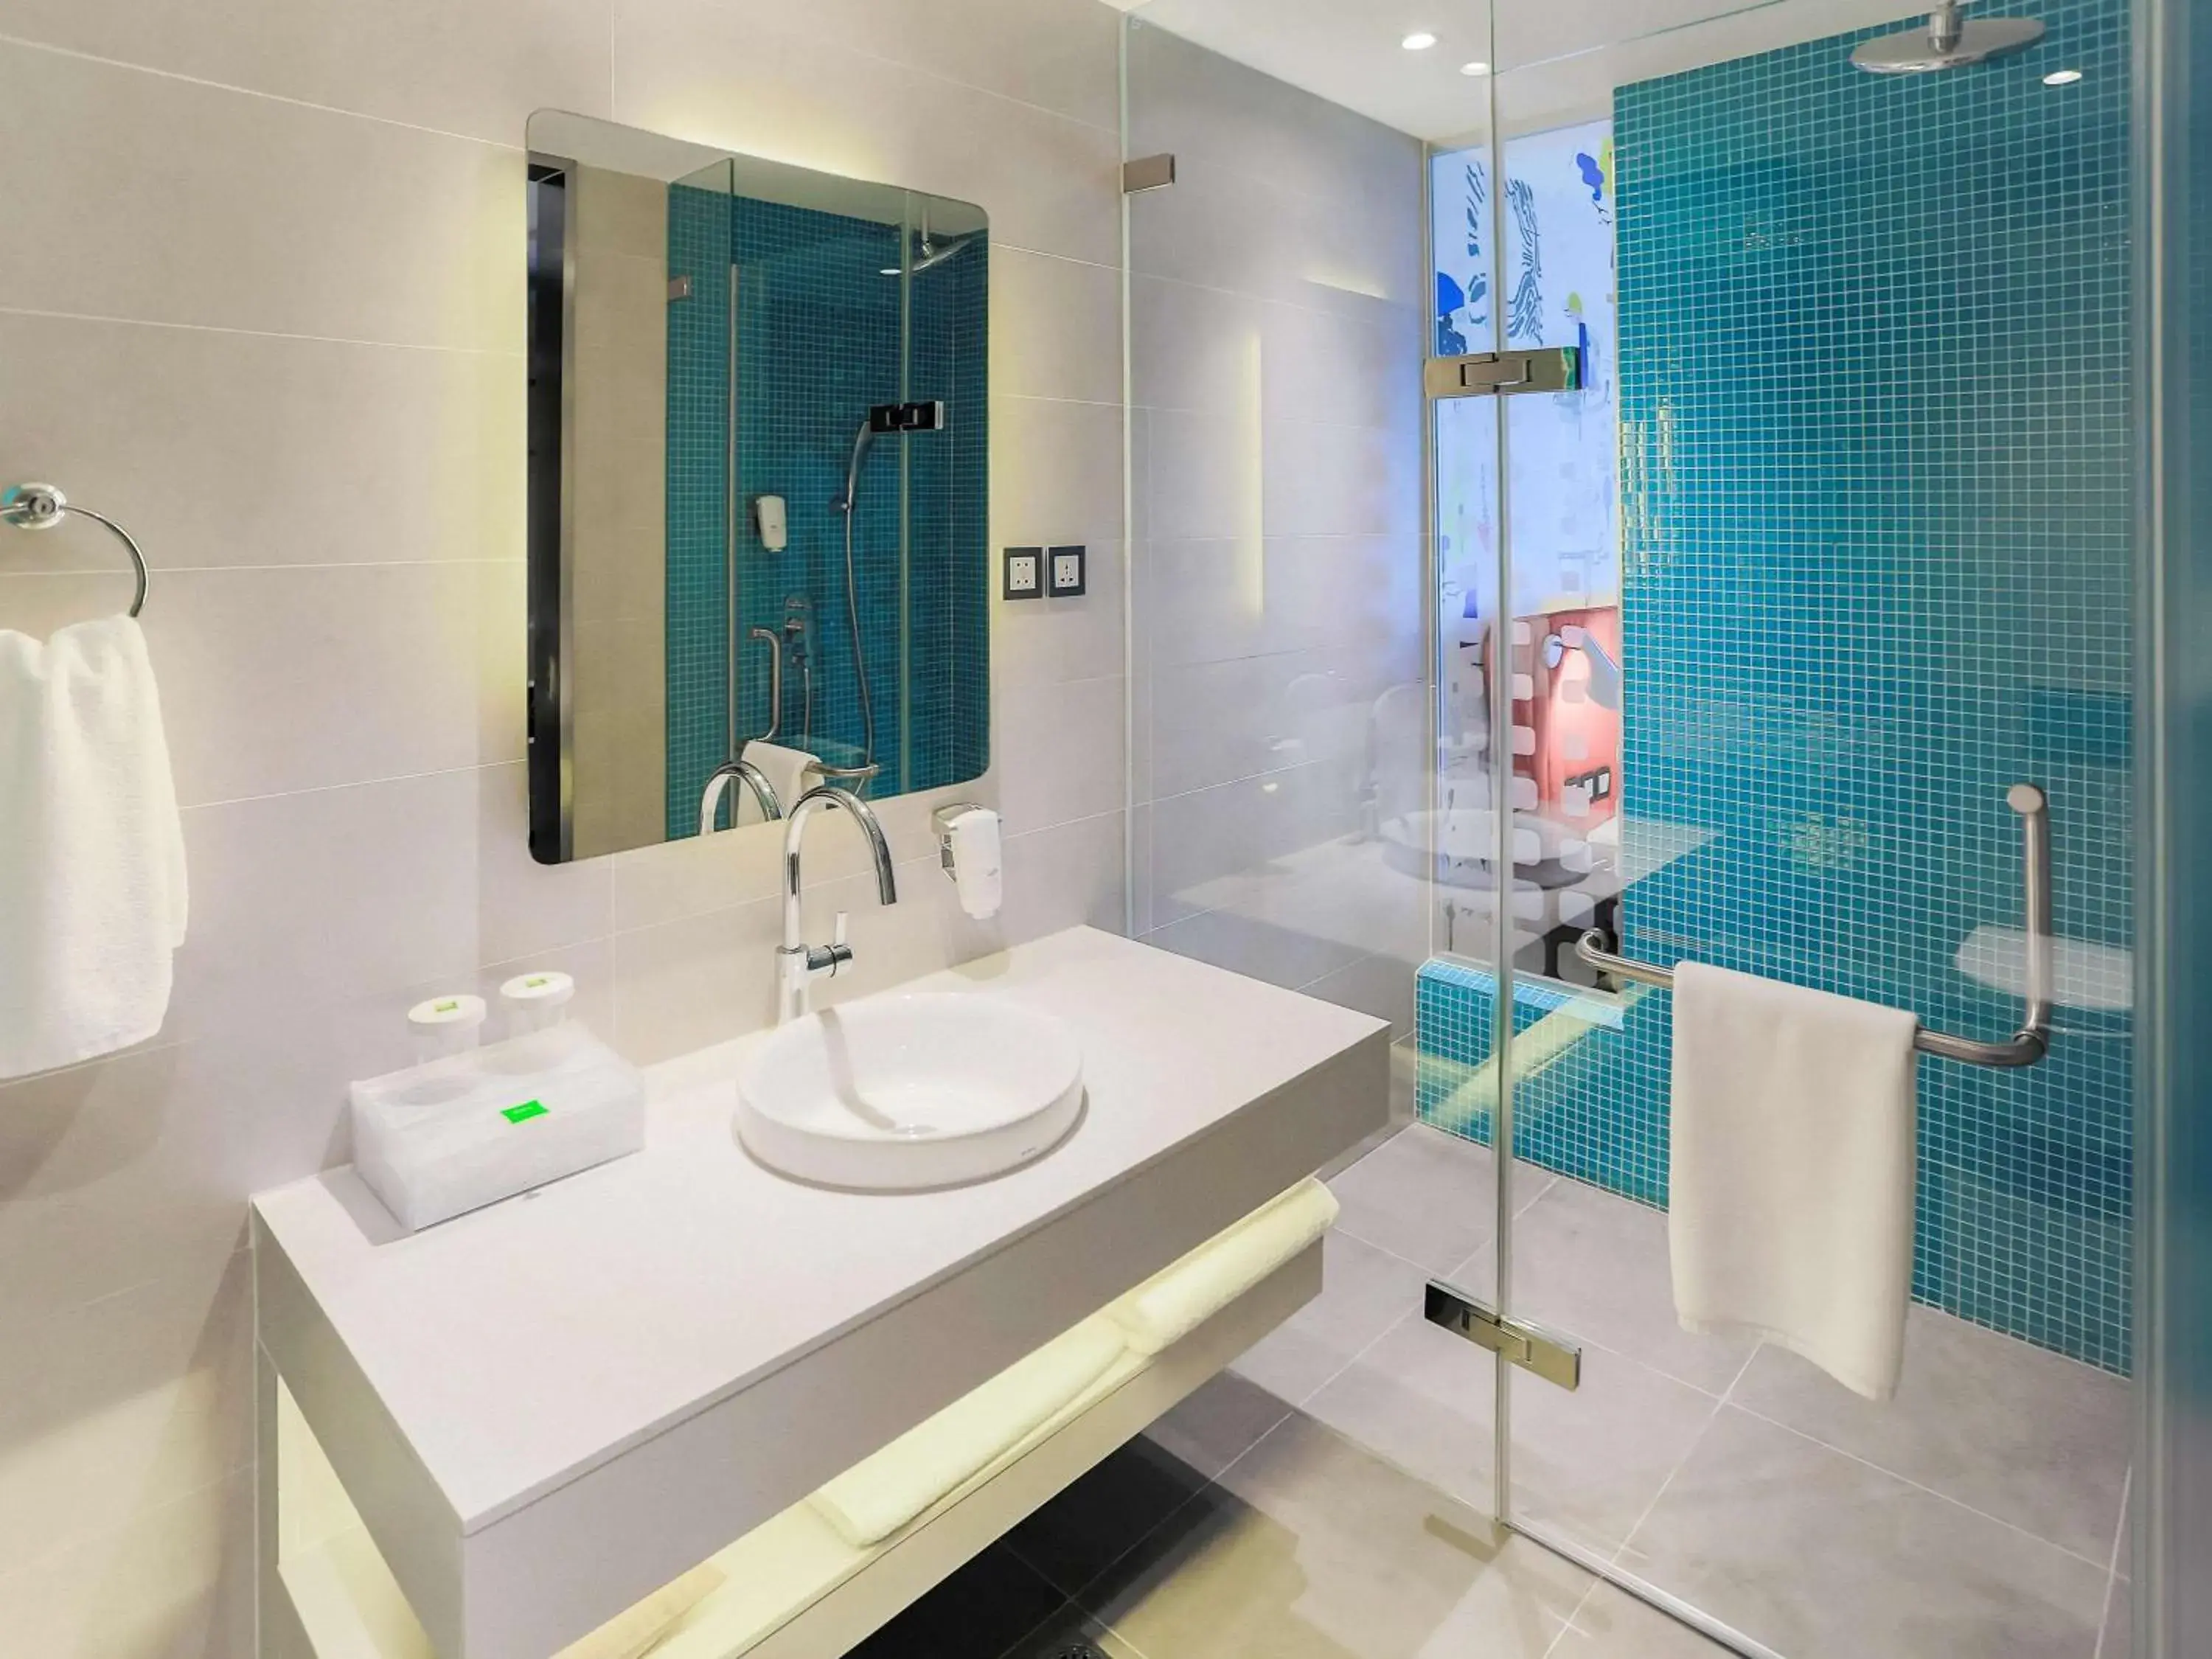 Photo of the whole room, Bathroom in ibis Styles Ulaanbaatar